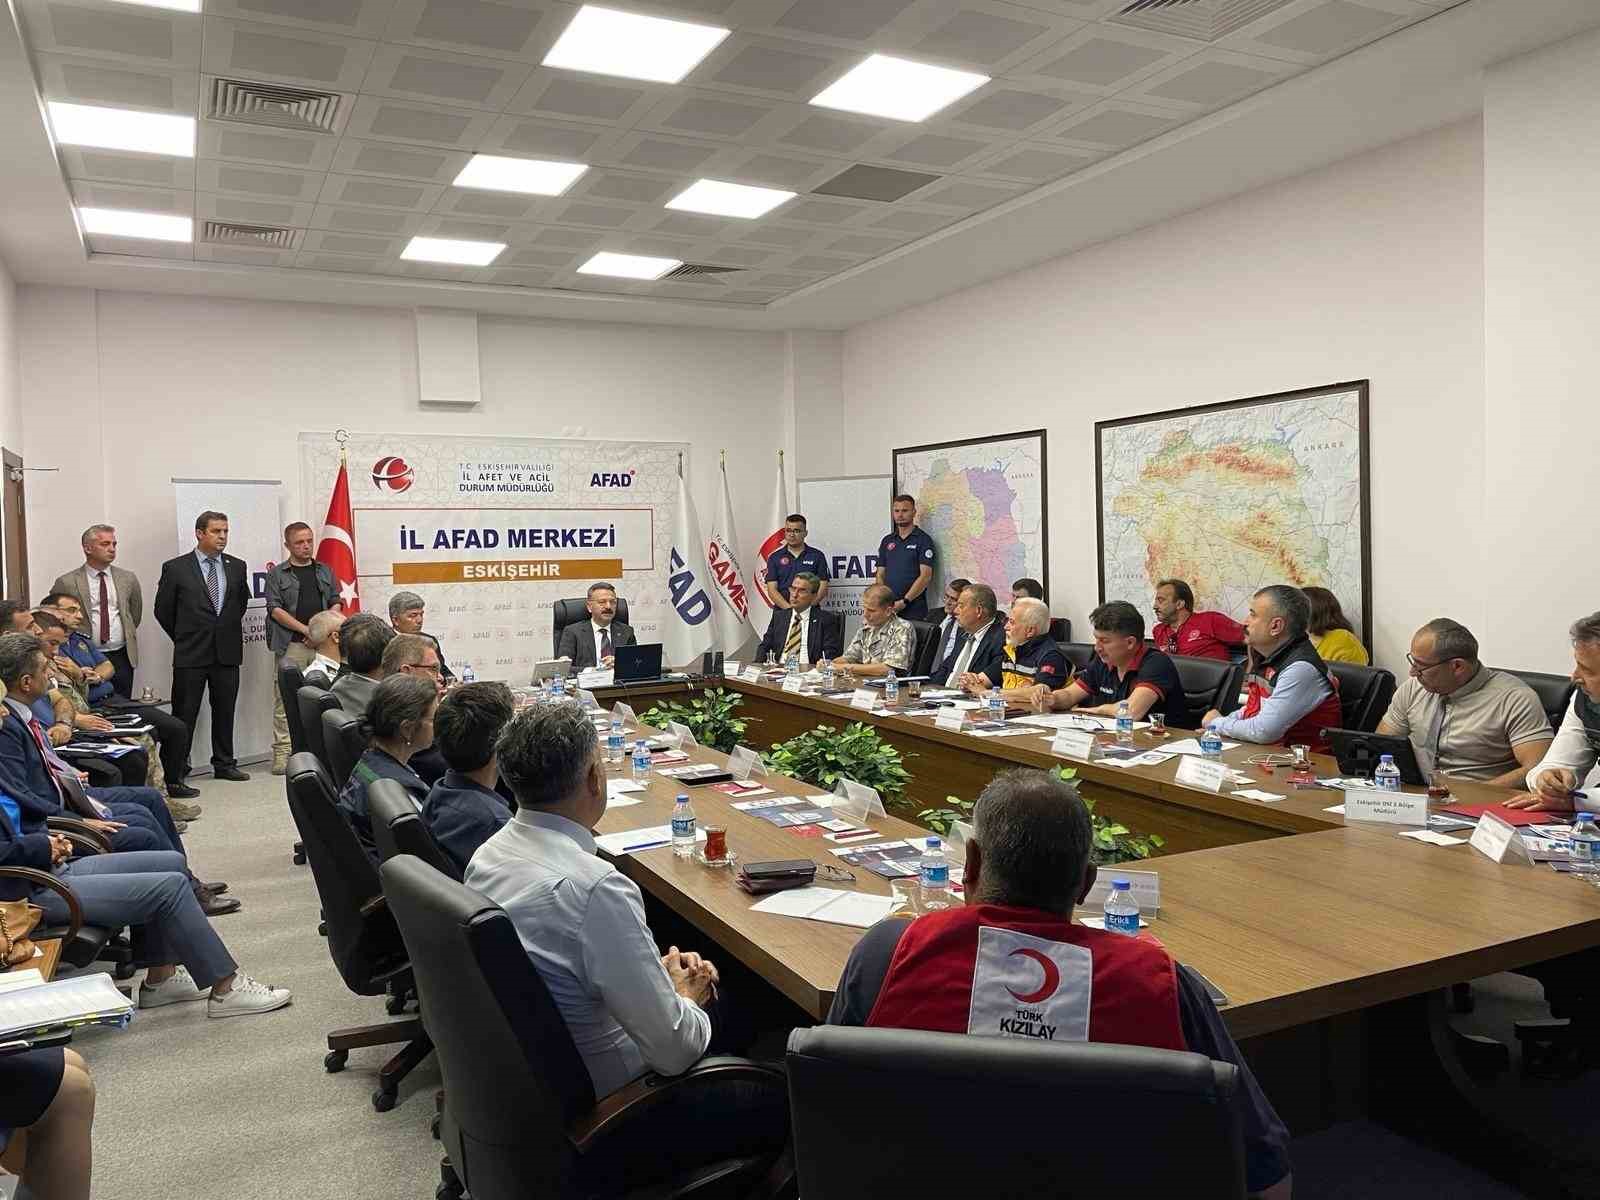 Saha Uzantılı Masa Başı Deprem Tatbikatı, Vali Aksoy’un başkanlığında gerçekleştirildi